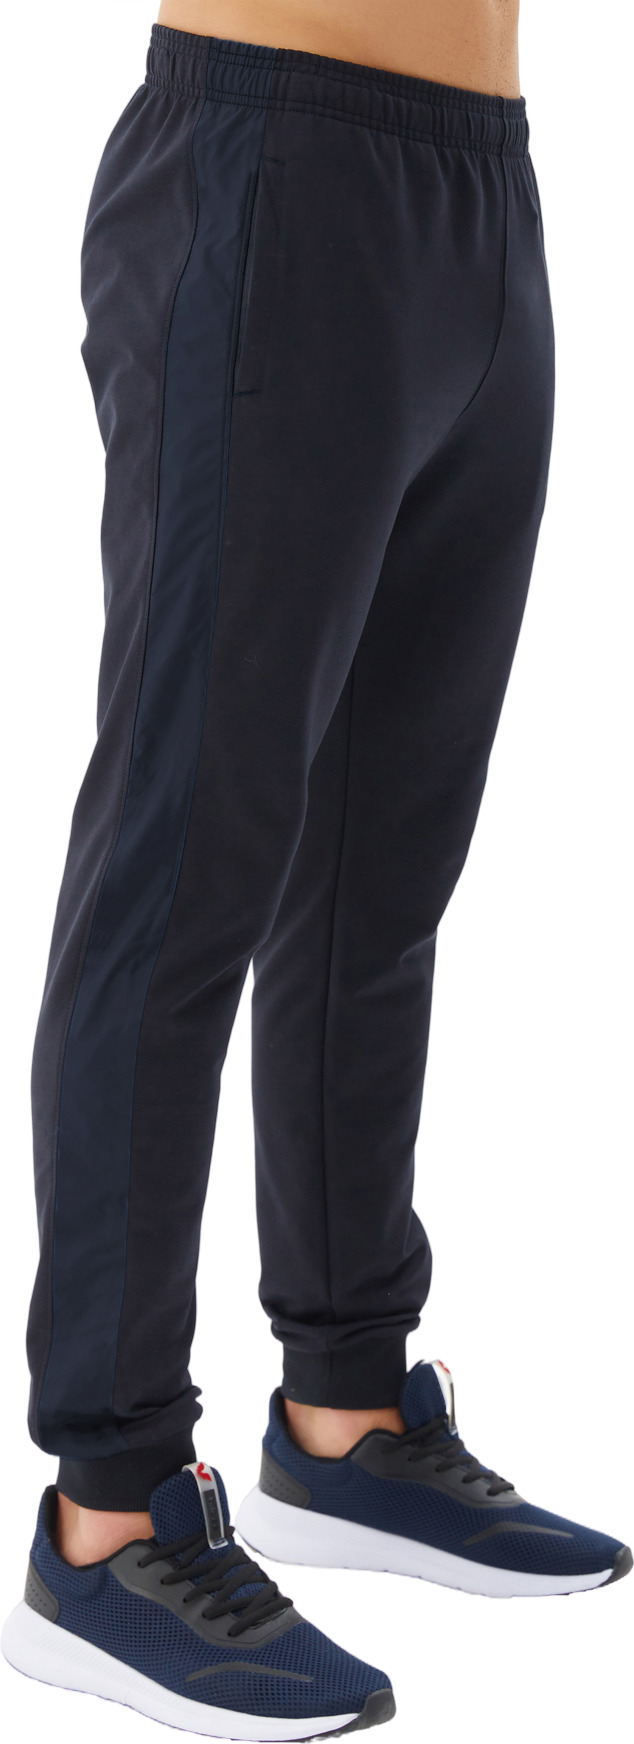 Спортивные брюки мужские Bilcee Men's Sweatpants синие M